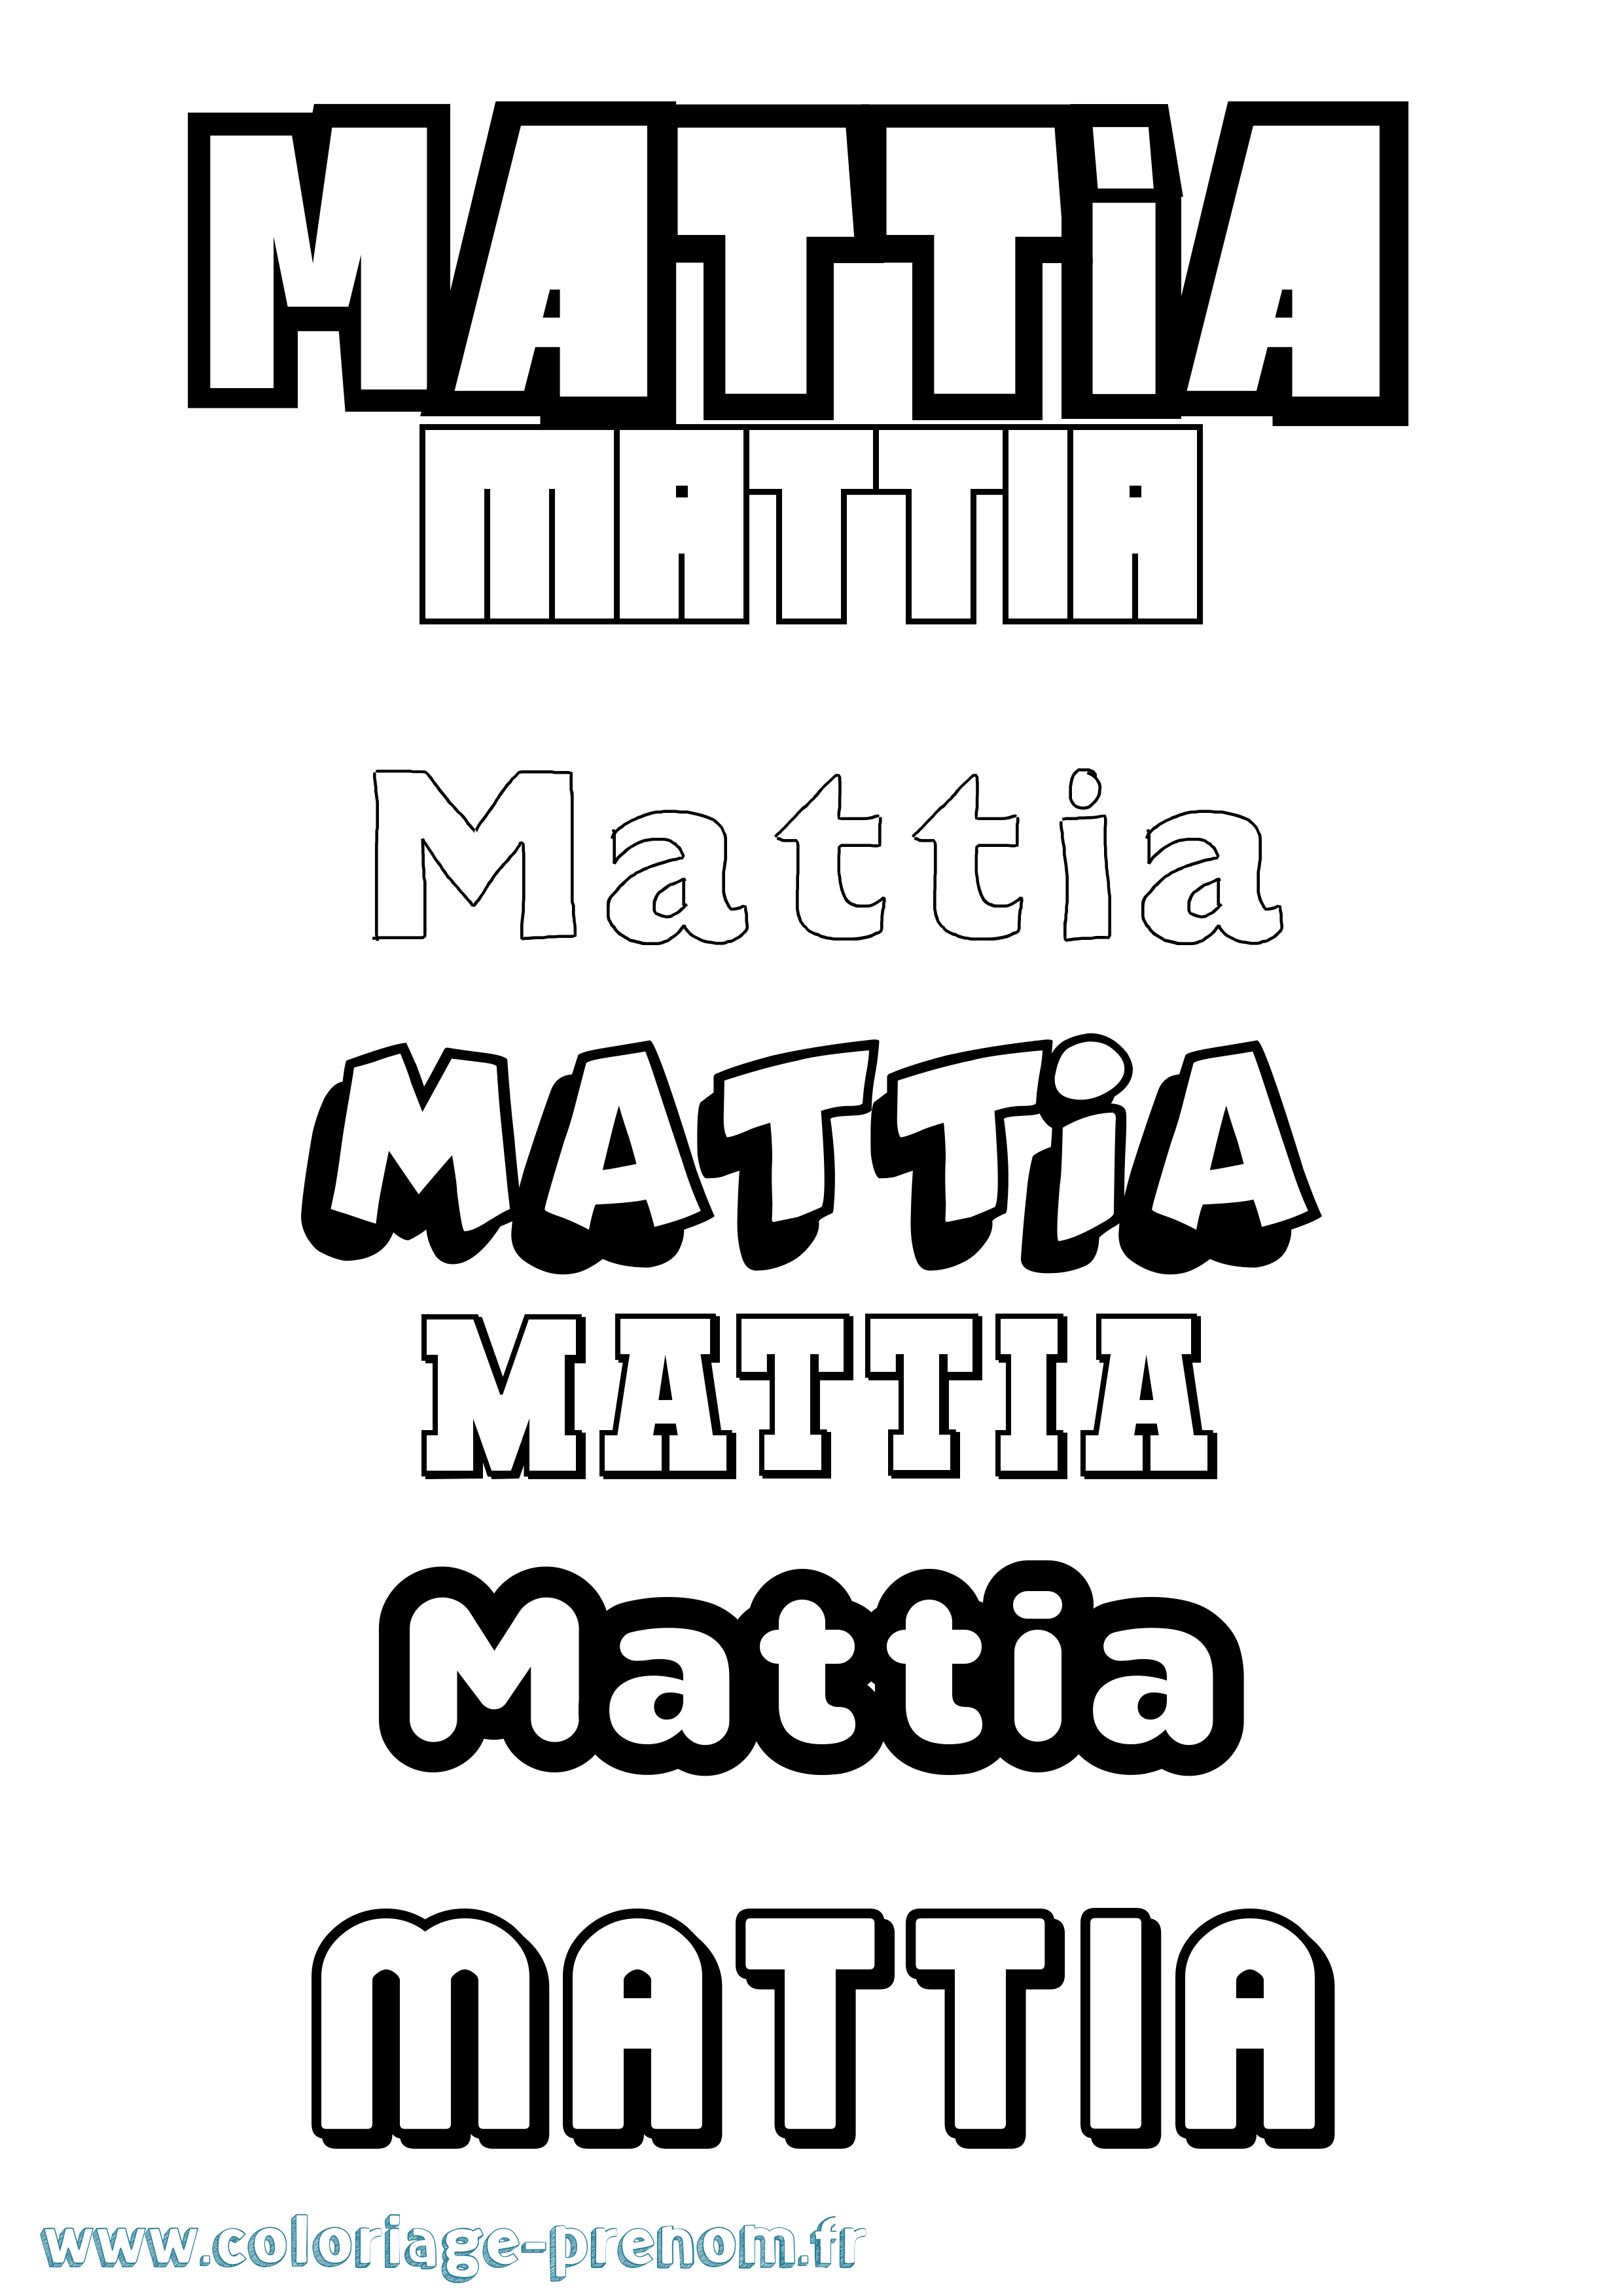 Coloriage prénom Mattia Simple